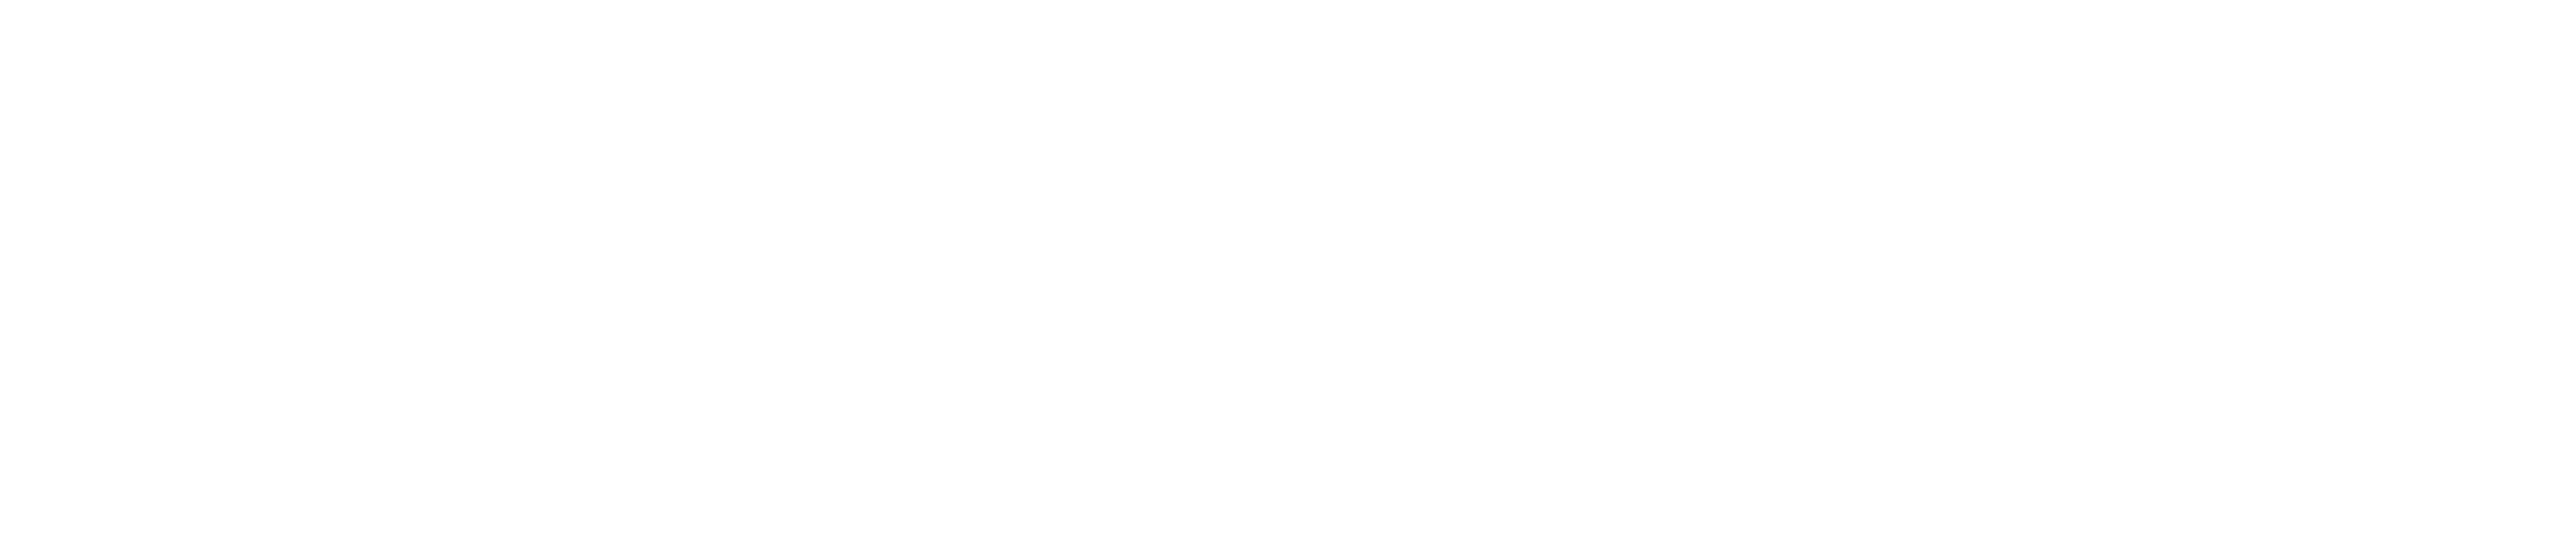 Andrews University - Center for Digital Learning & Instructional Technology